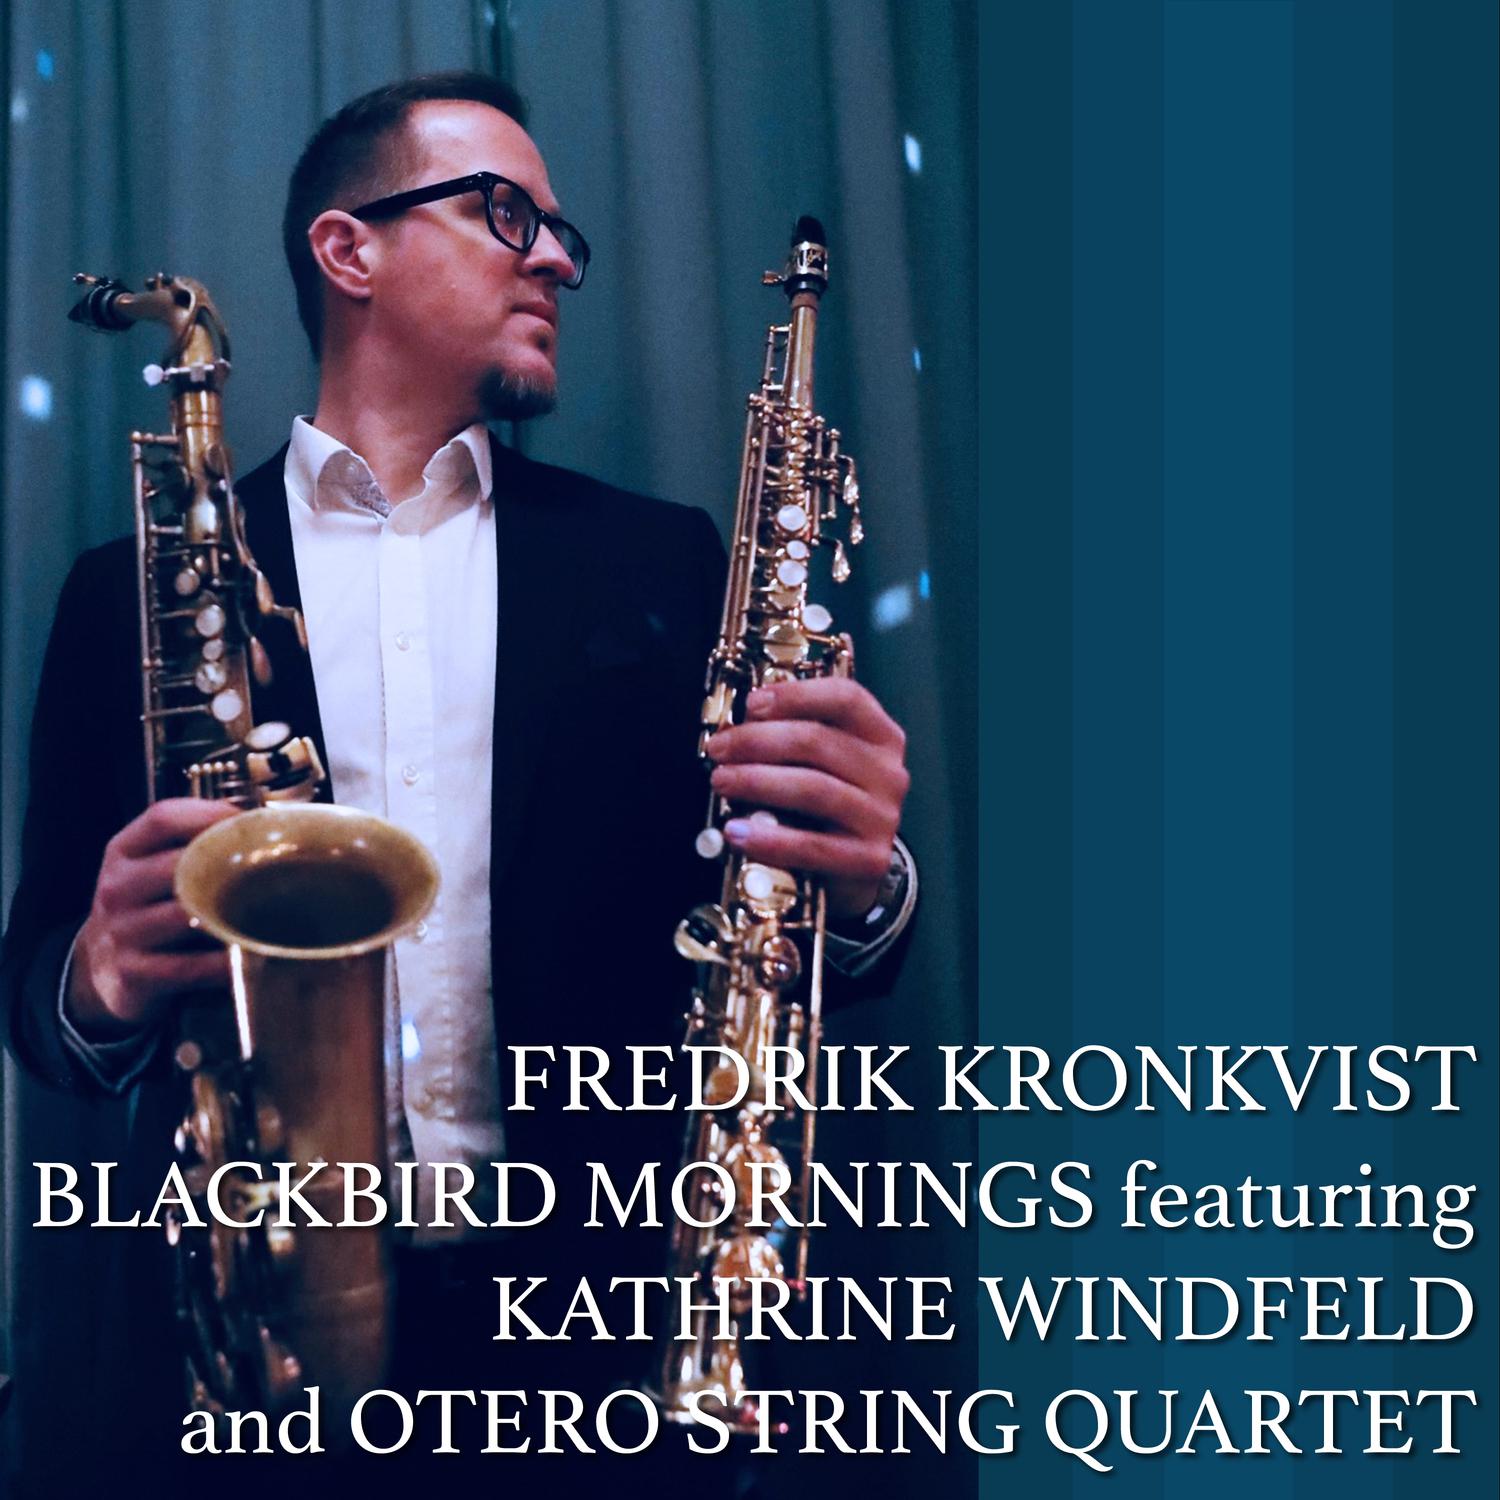 Fredrik Kronkvist - Blackbird Mornings